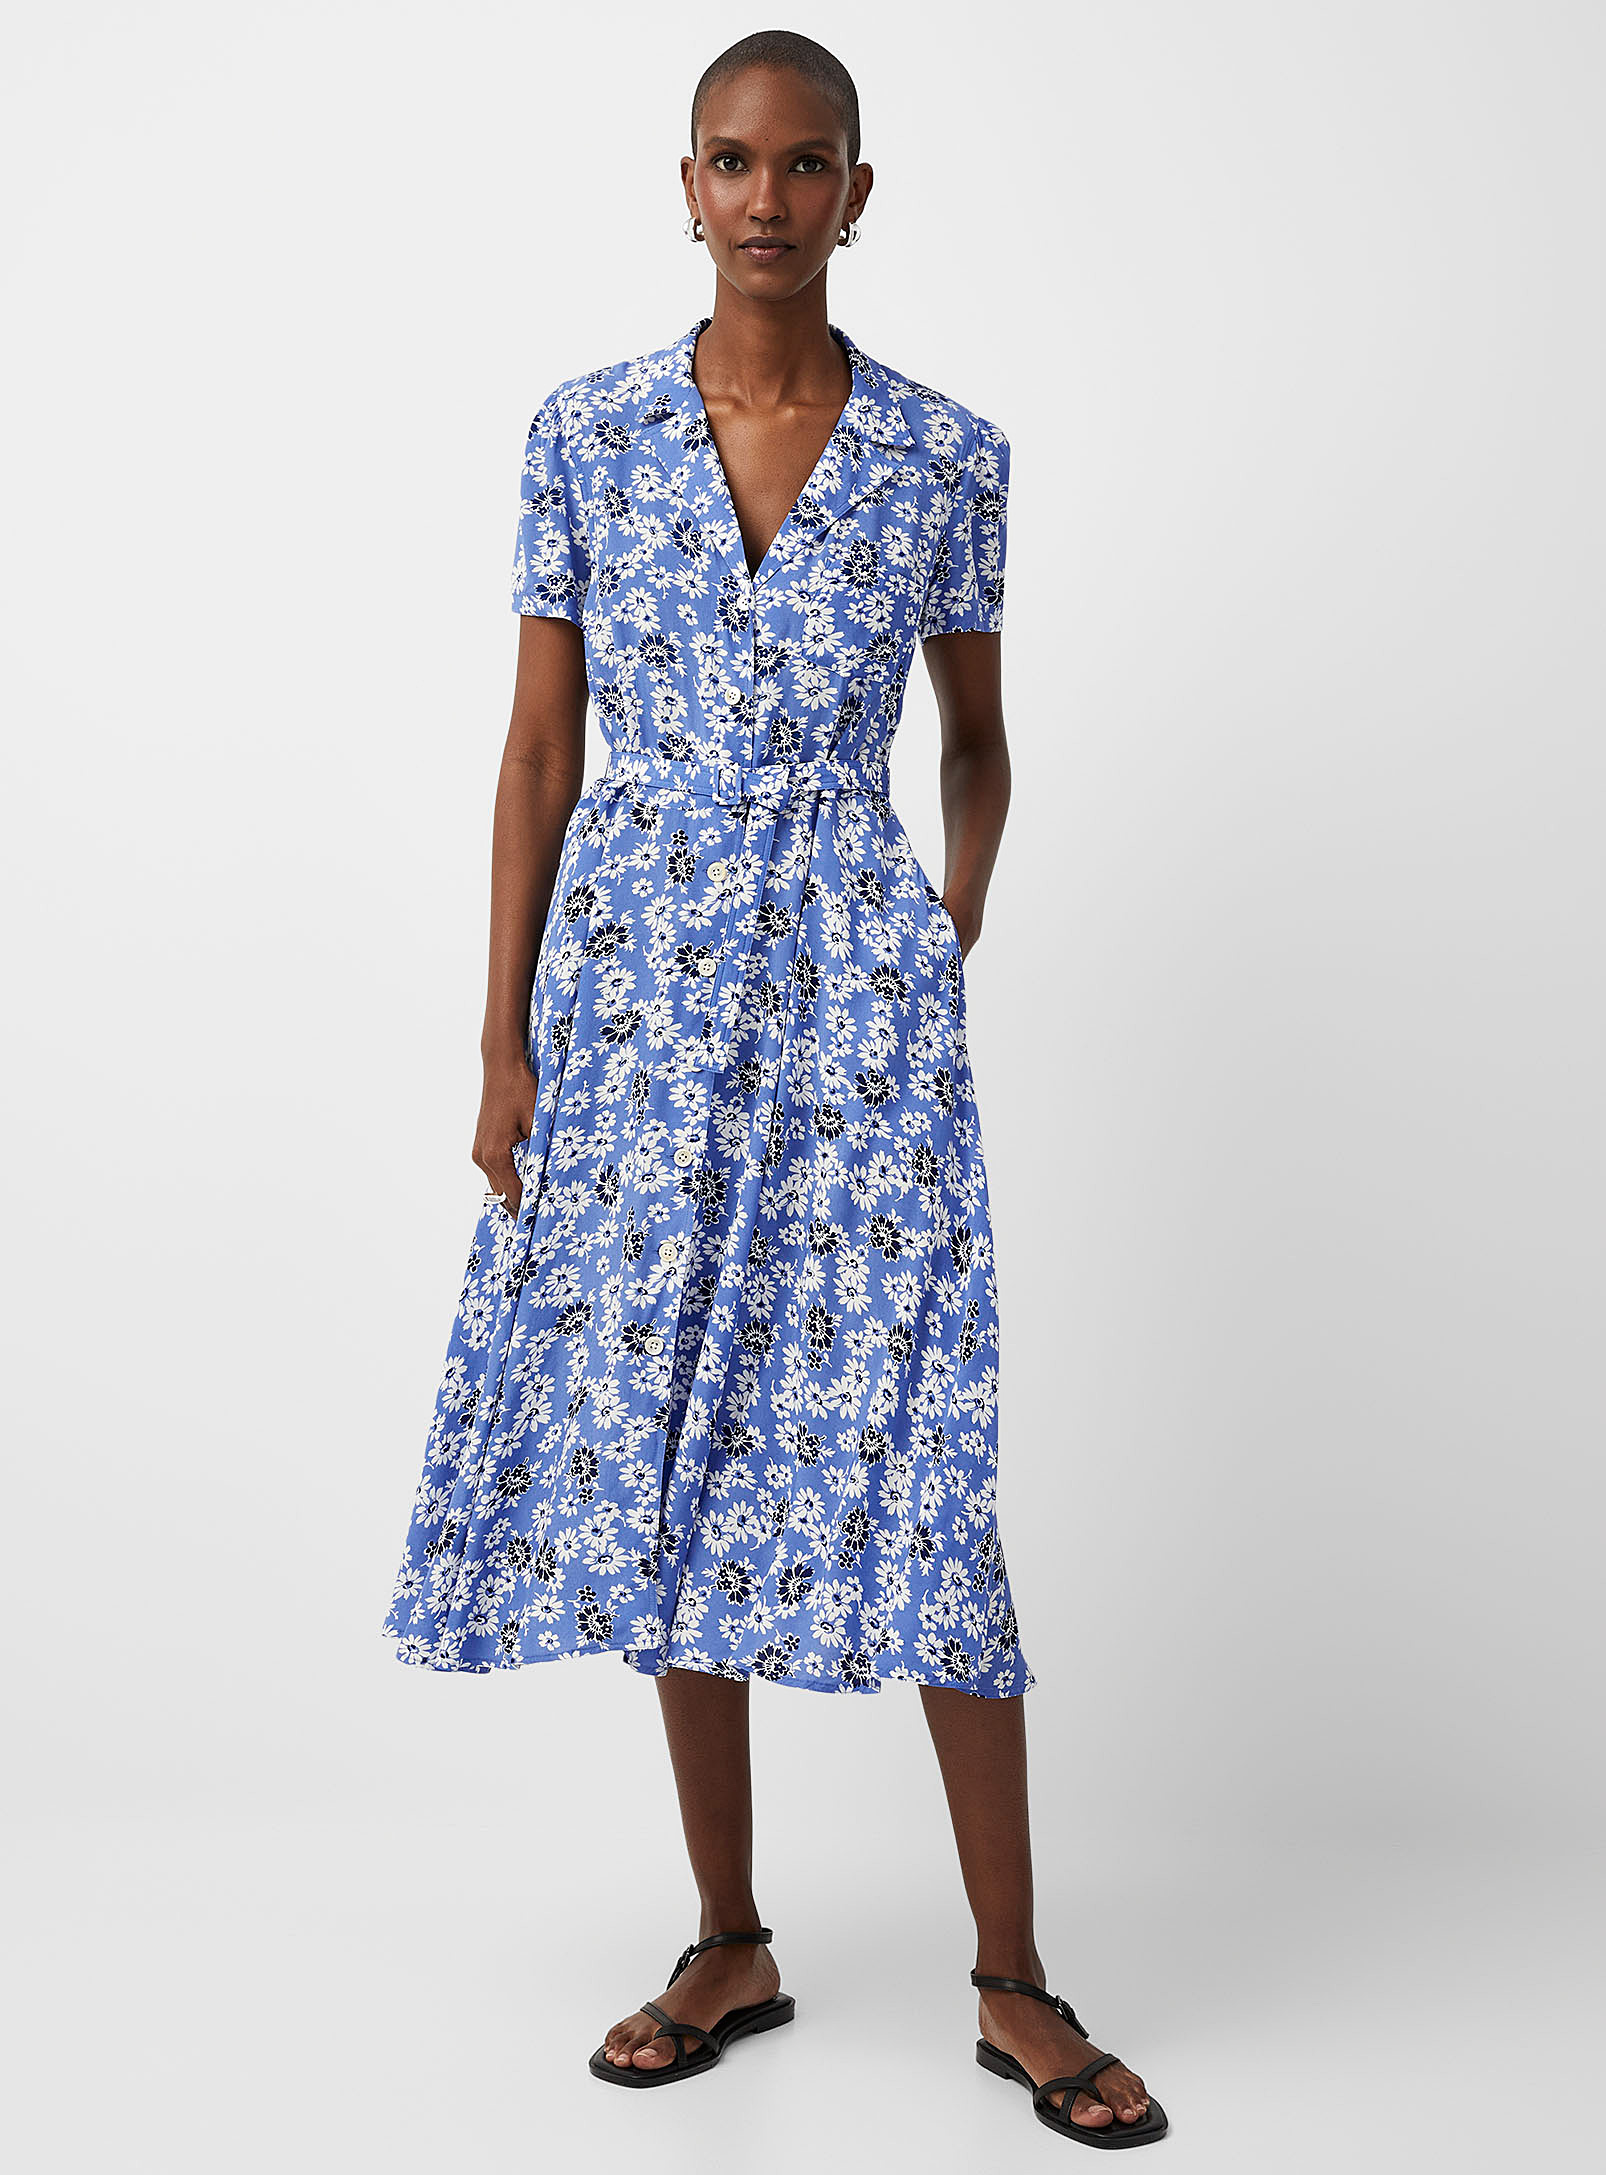 Polo Ralph Lauren - Women's Summer daisies notch collar belted dress